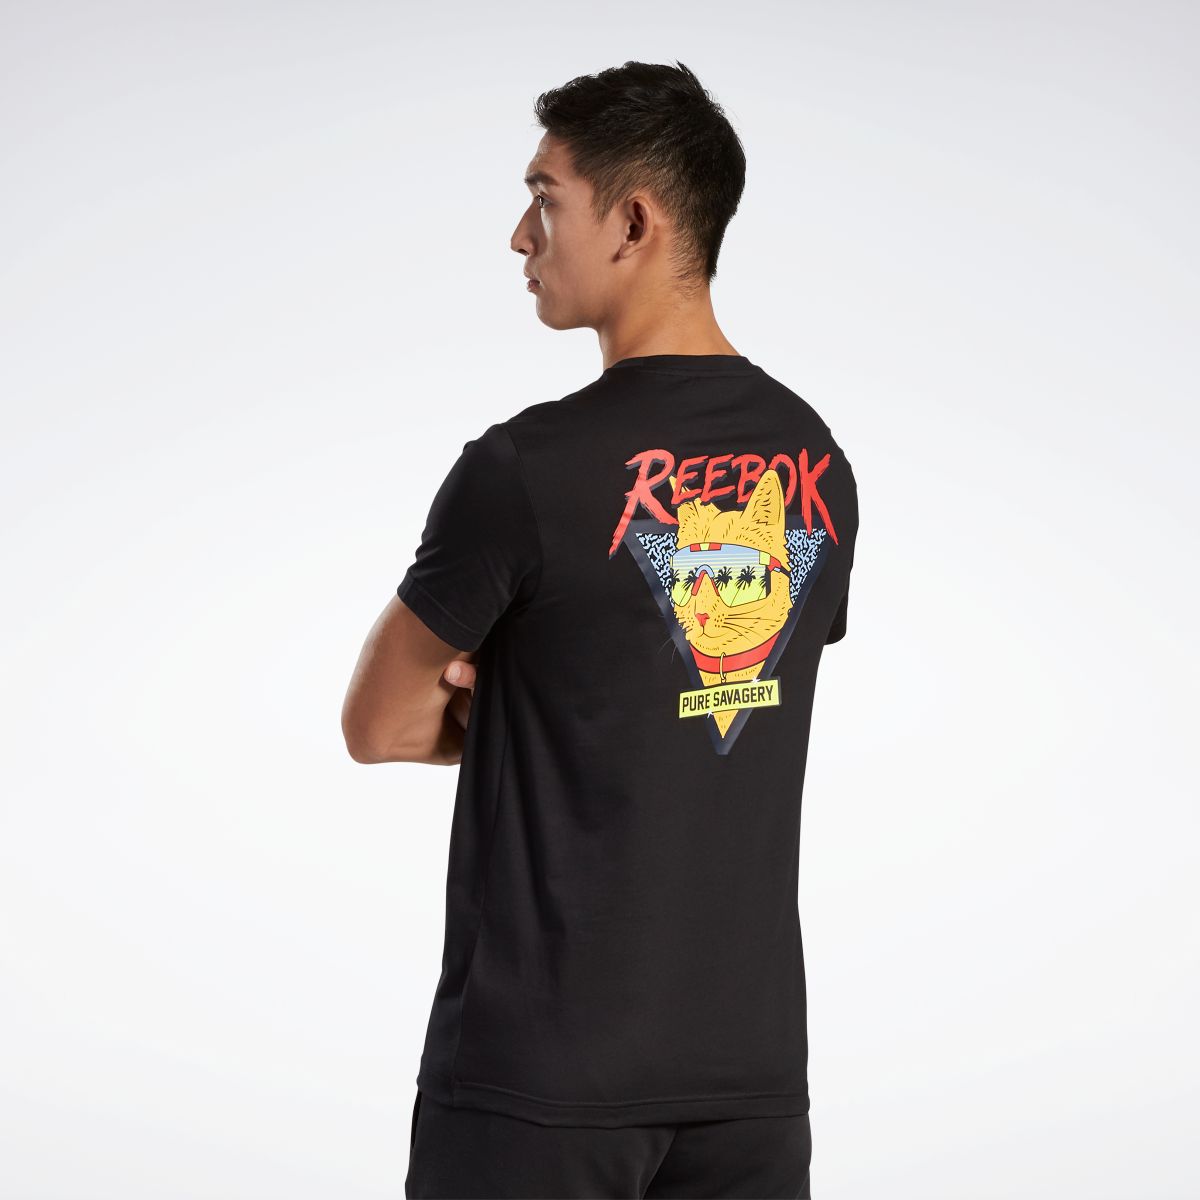 楽天市場 公式 リーボック Reebok グラフィック Tシャツ Graphic Tee メンズ Fr0024 トレーニング ウェア Reebok Online Shop 楽天市場店